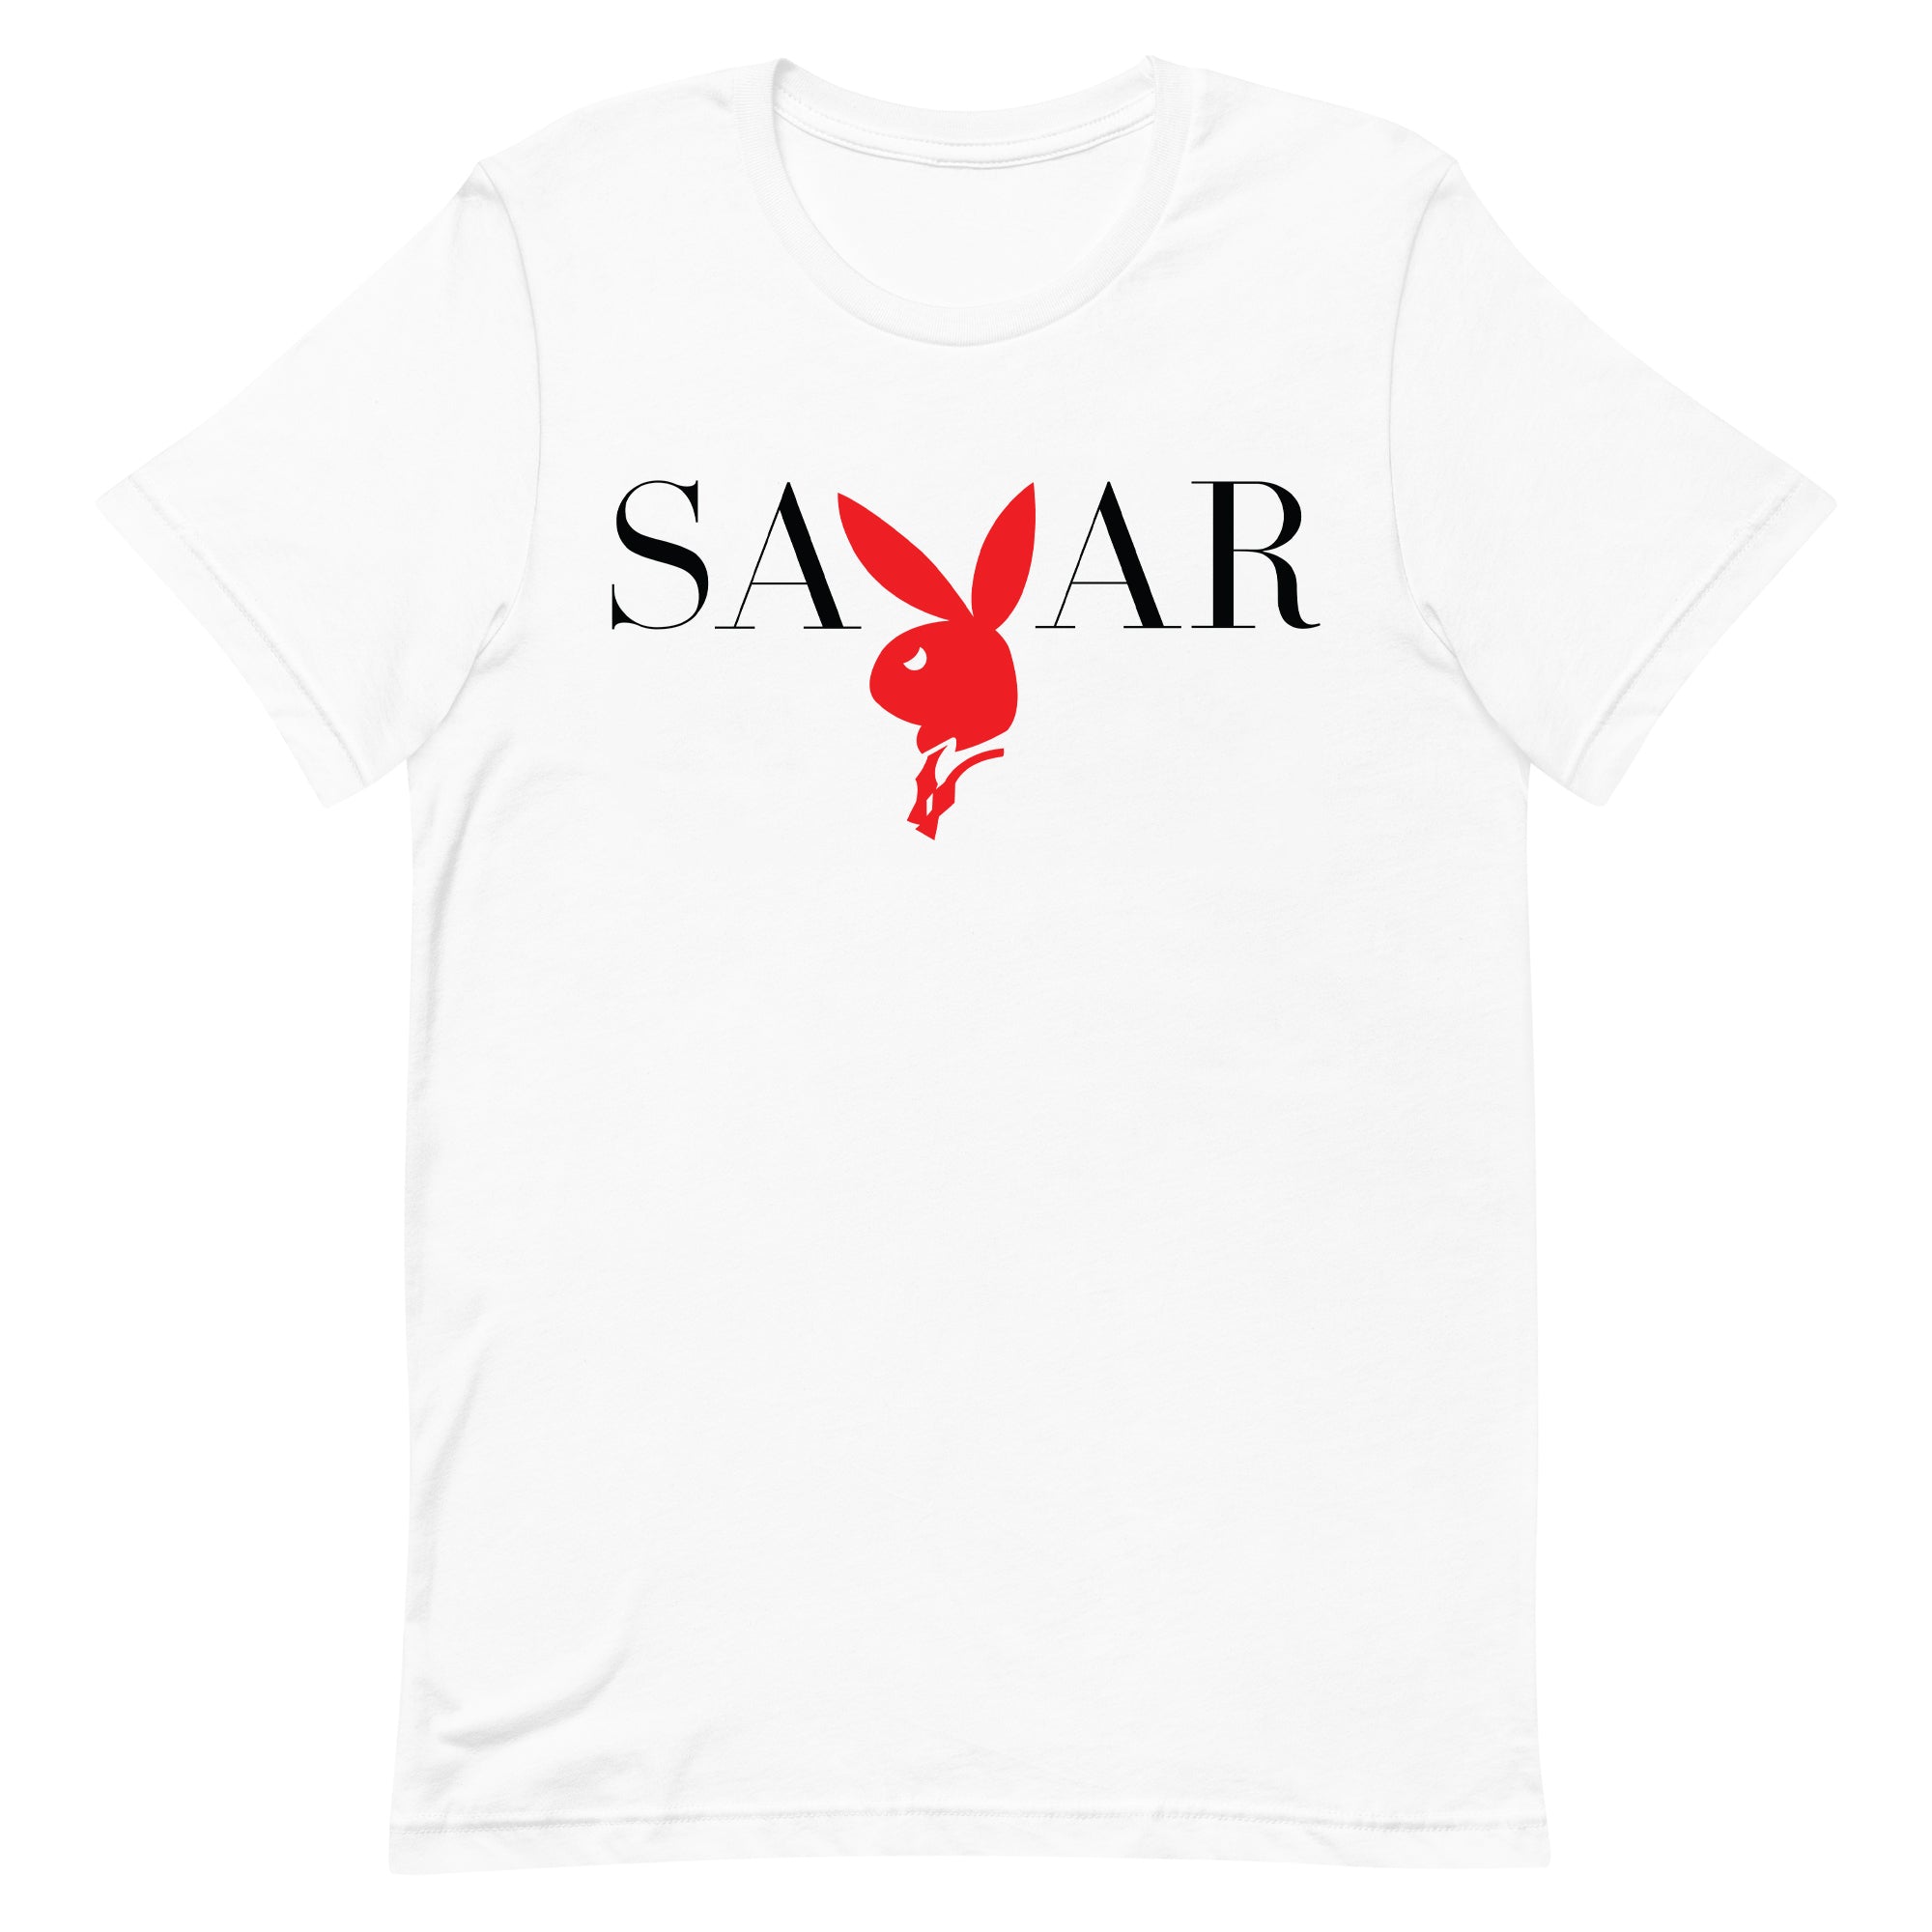 savar-mens-play-boy-white-t-shirt-st209-100